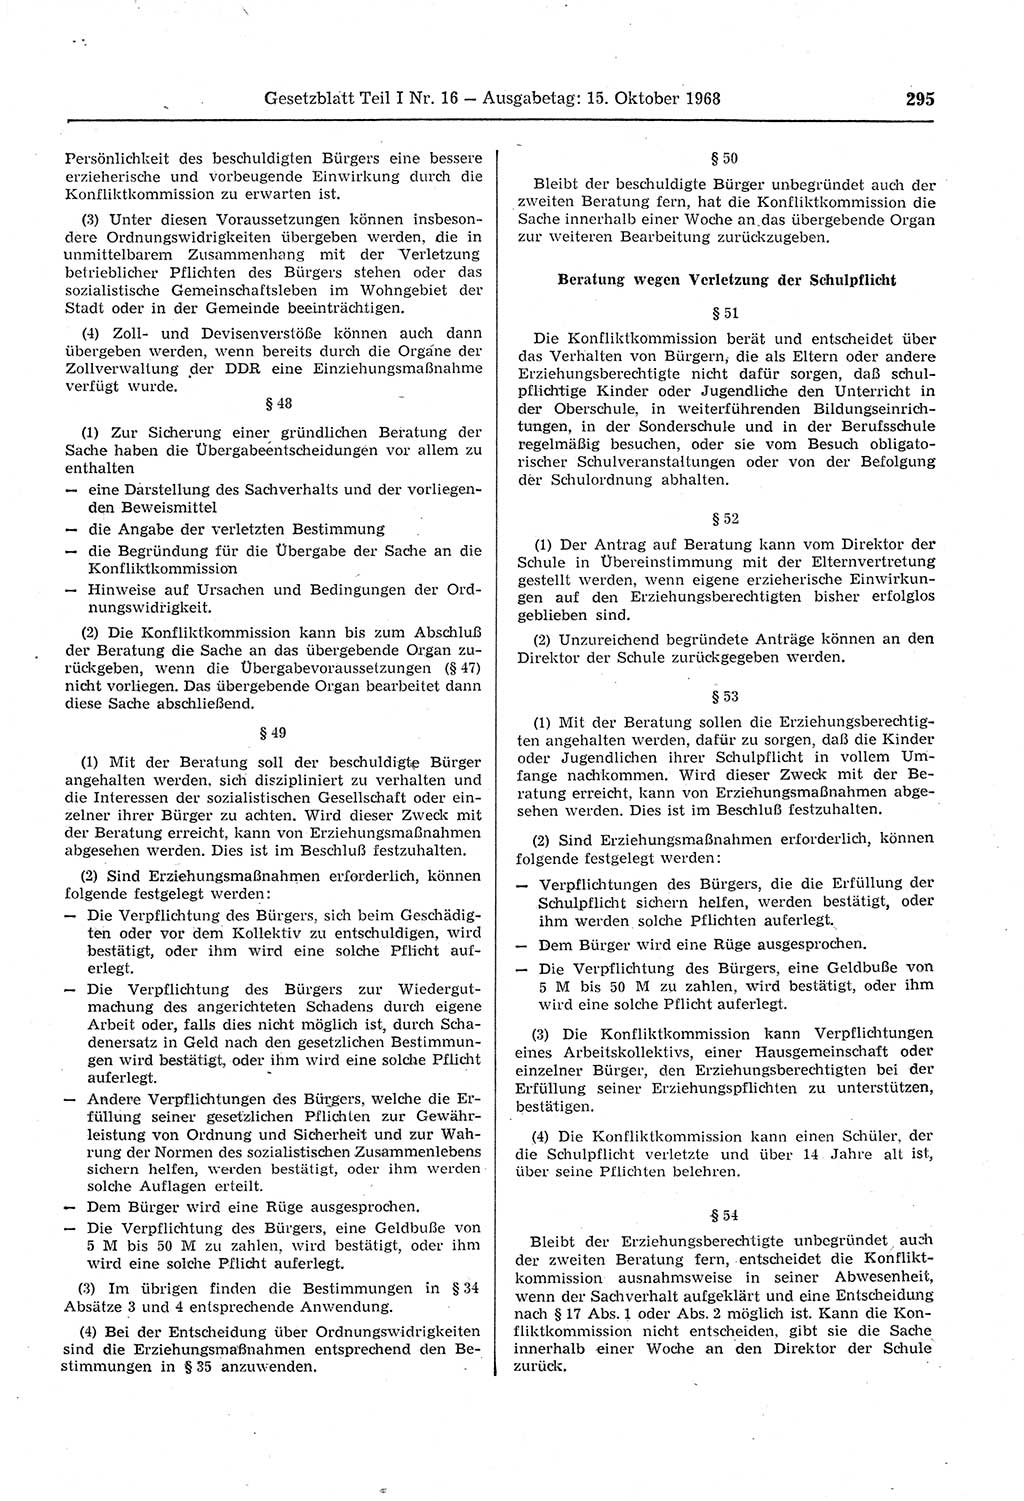 Gesetzblatt (GBl.) der Deutschen Demokratischen Republik (DDR) Teil Ⅰ 1968, Seite 295 (GBl. DDR Ⅰ 1968, S. 295)